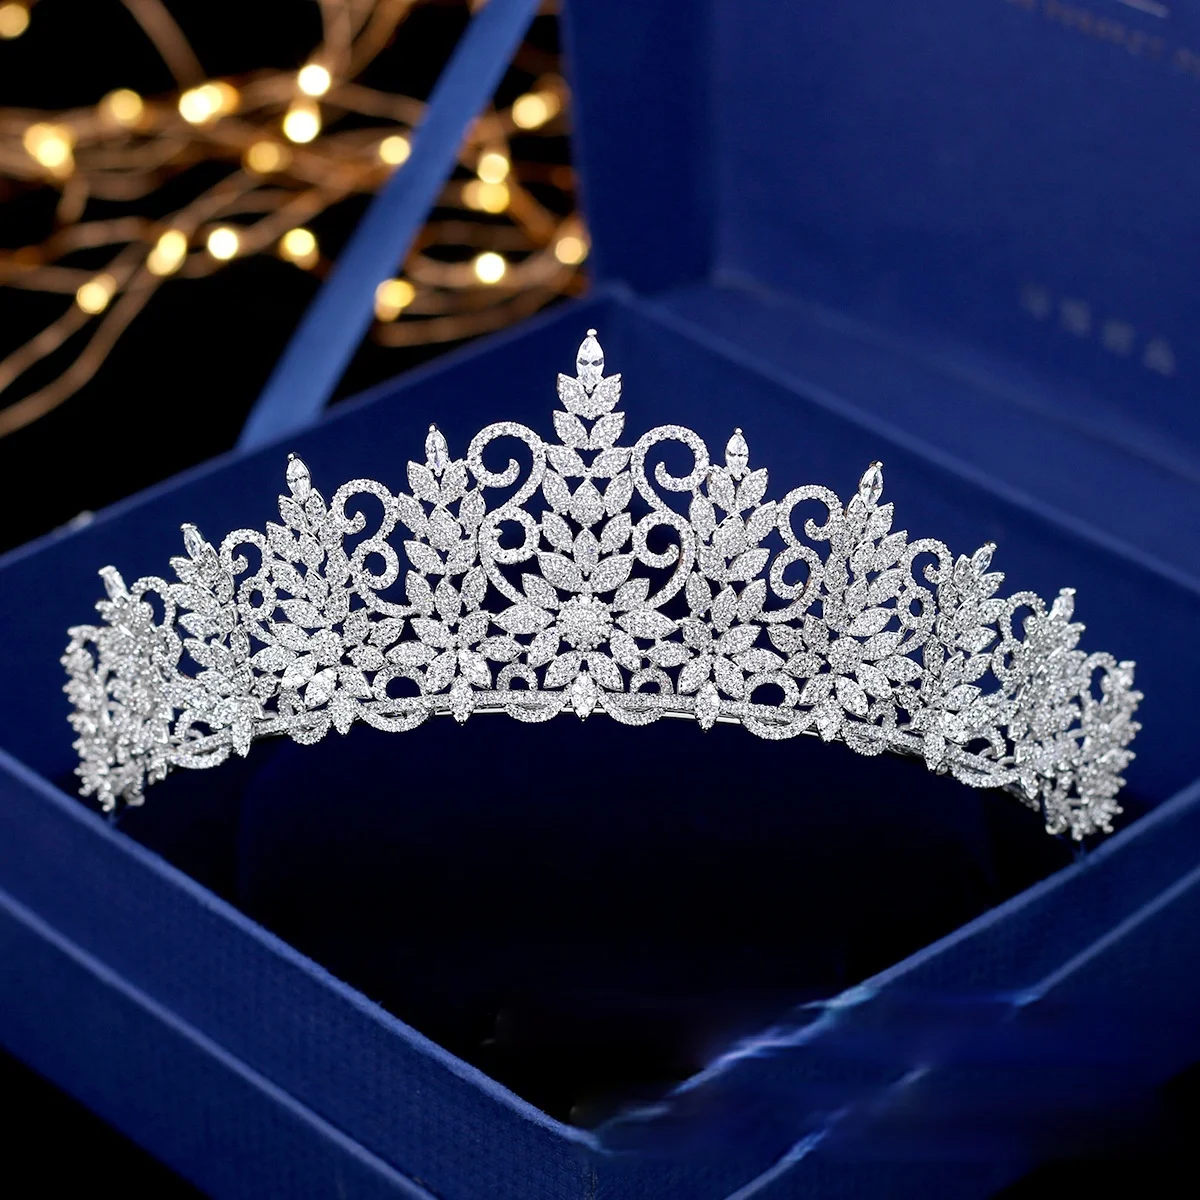 כלה כיסוי הראש מלא זירקון כתר נסיכה קוריאנית סגנון אלגנטי הכתר שמלת החתונה אביזרים לשיער - 0